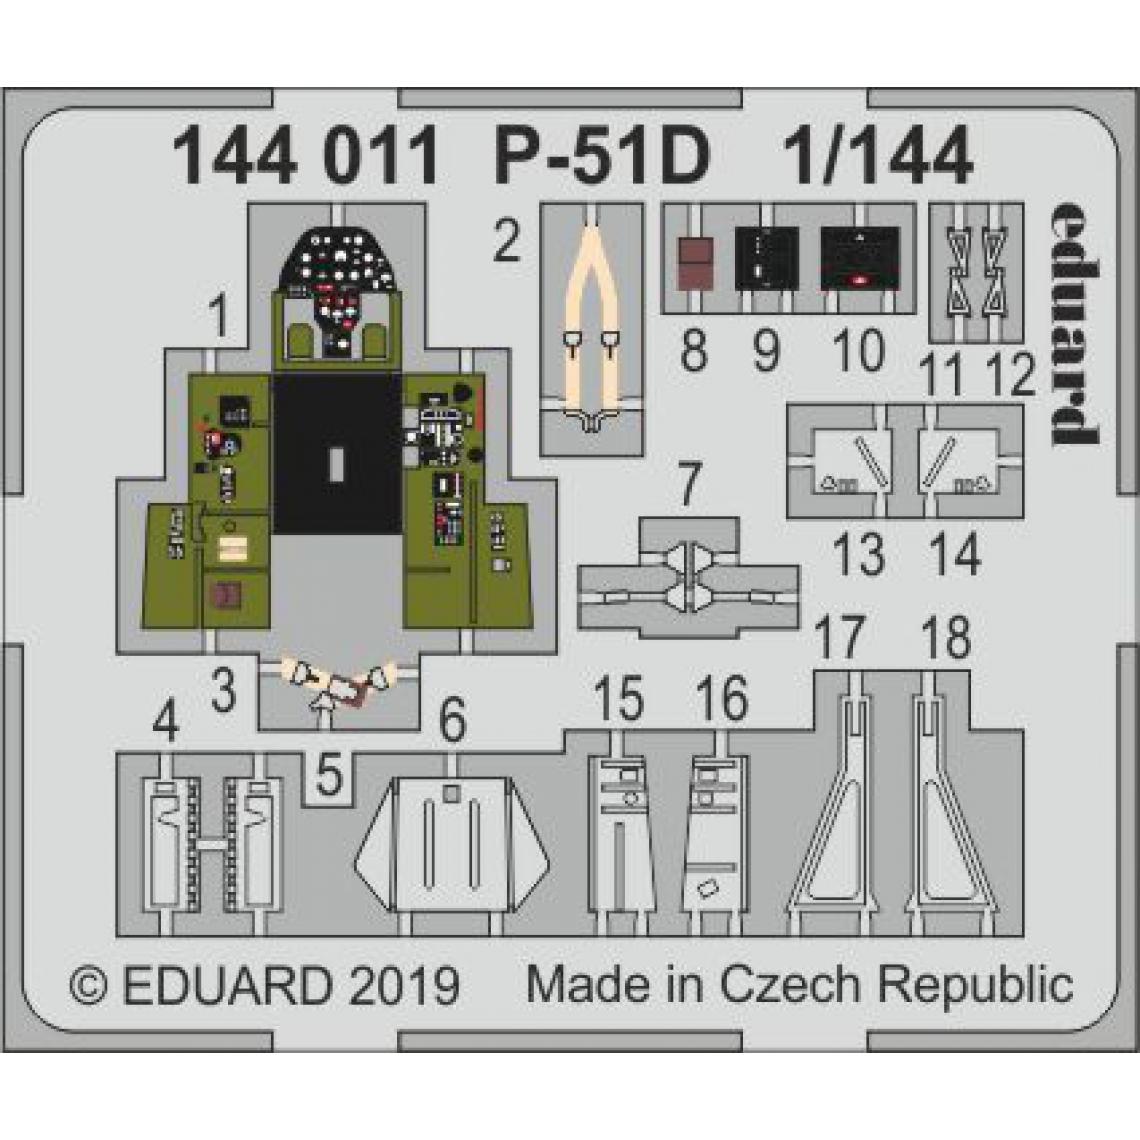 Eduard - P-51D for Eduard - 1:144e - Eduard Accessories - Accessoires et pièces